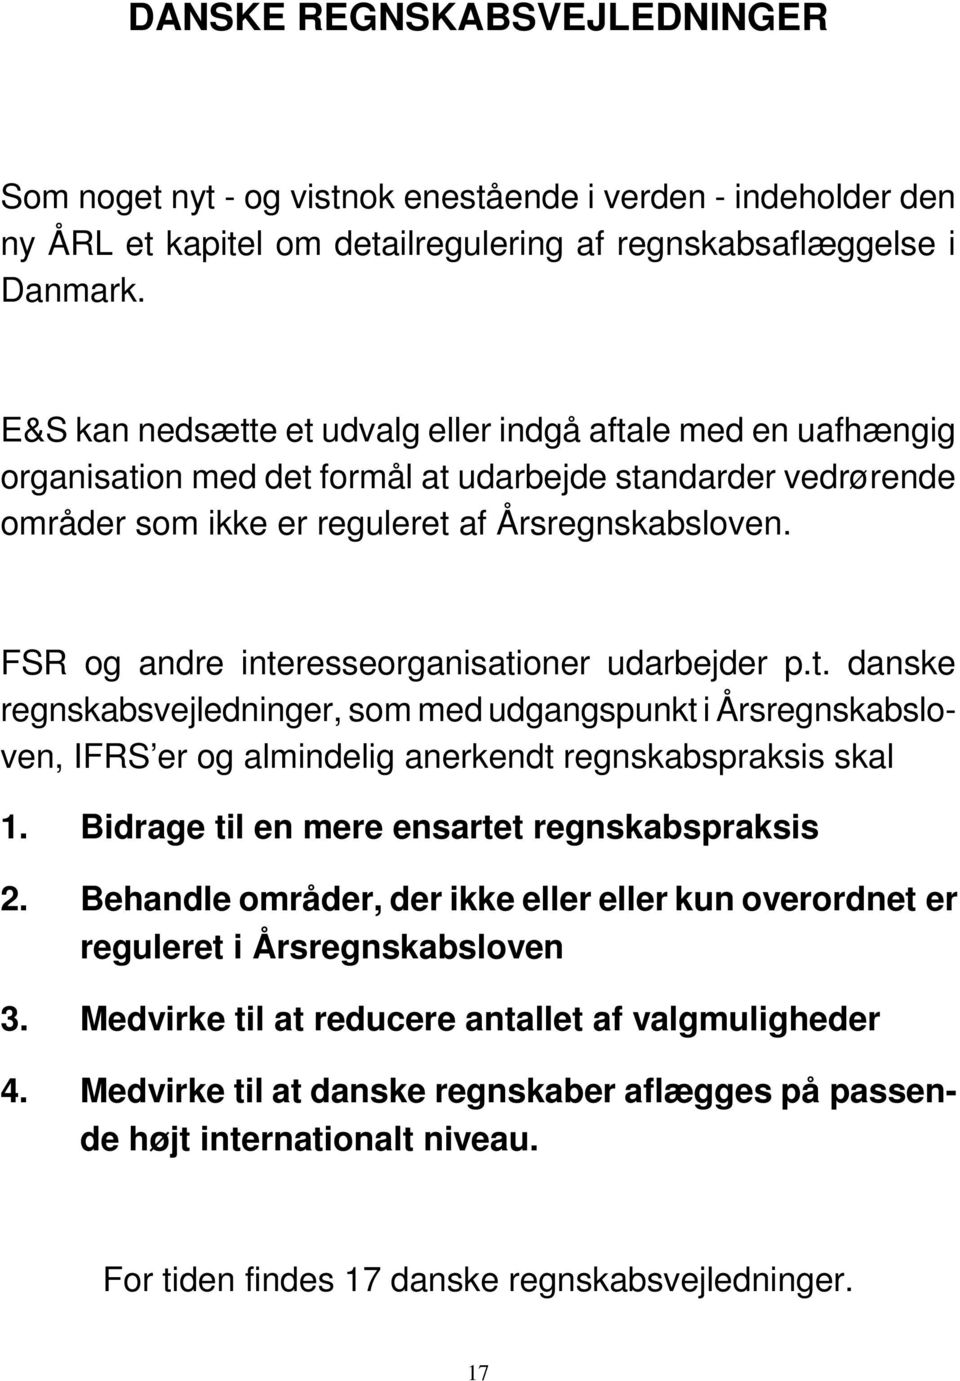 FSR og andre interesseorganisationer udarbejder p.t. danske regnskabsvejledninger, som med udgangspunkt i Årsregnskabsloven, IFRS er og almindelig anerkendt regnskabspraksis skal 1.